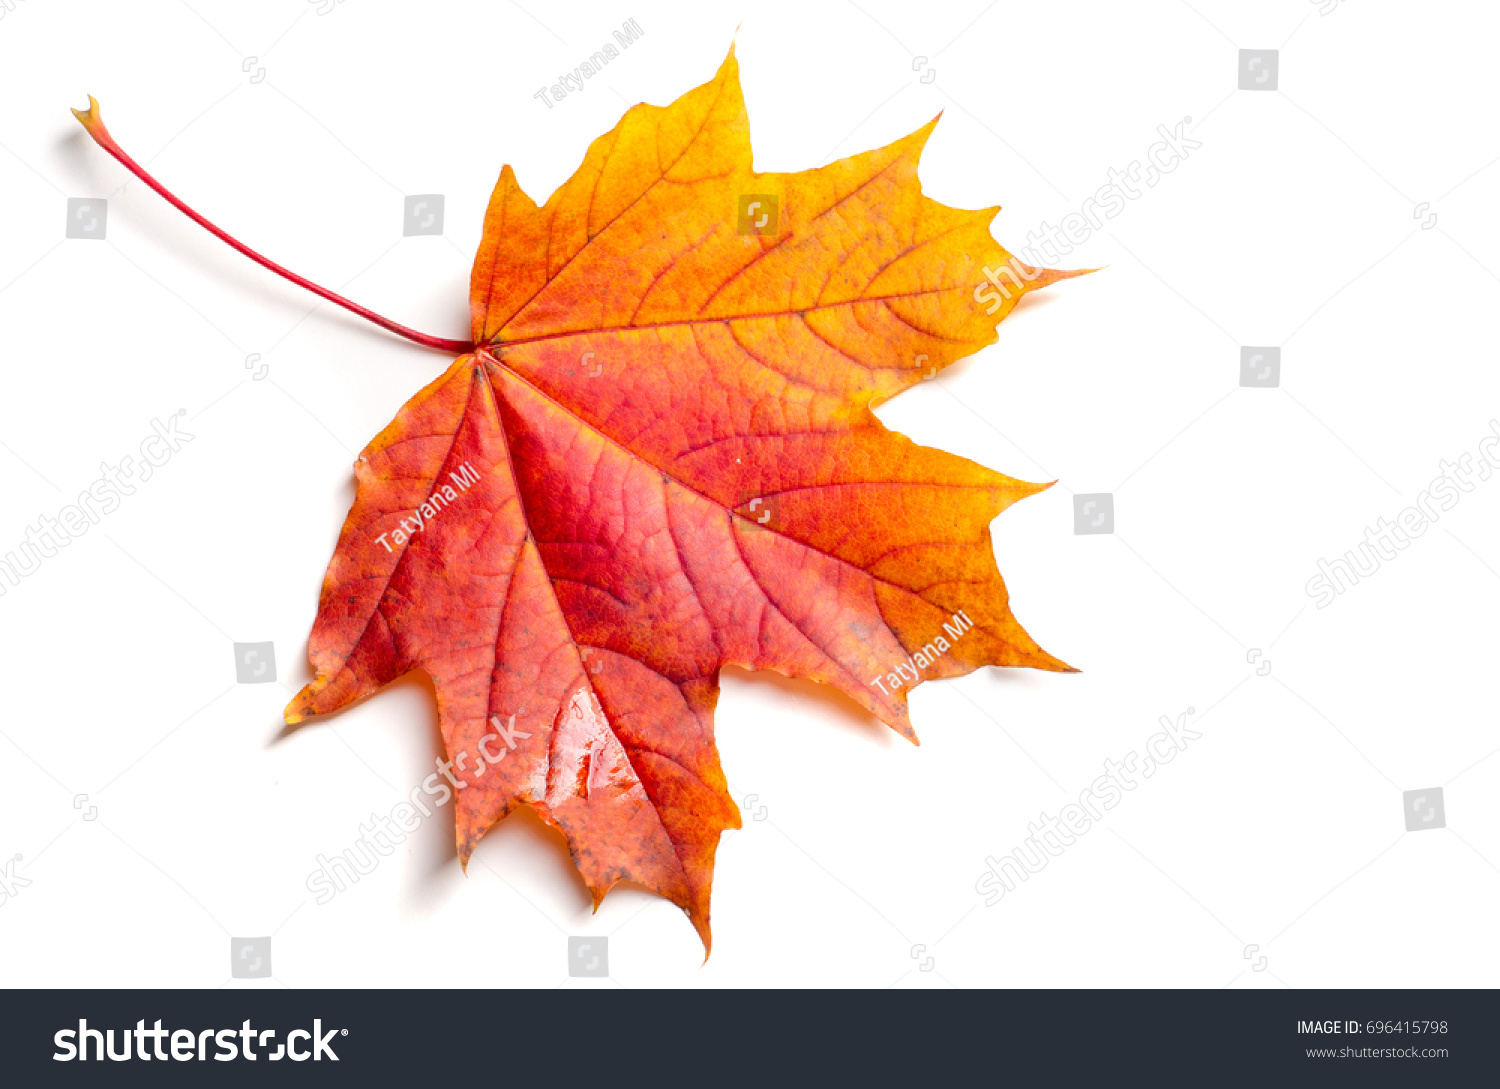 Texture, background, pattern. Autumn maple leaves. Background of maple leaves. Red and yellow maple leaves Autumn advance; Autumn motive #696415798